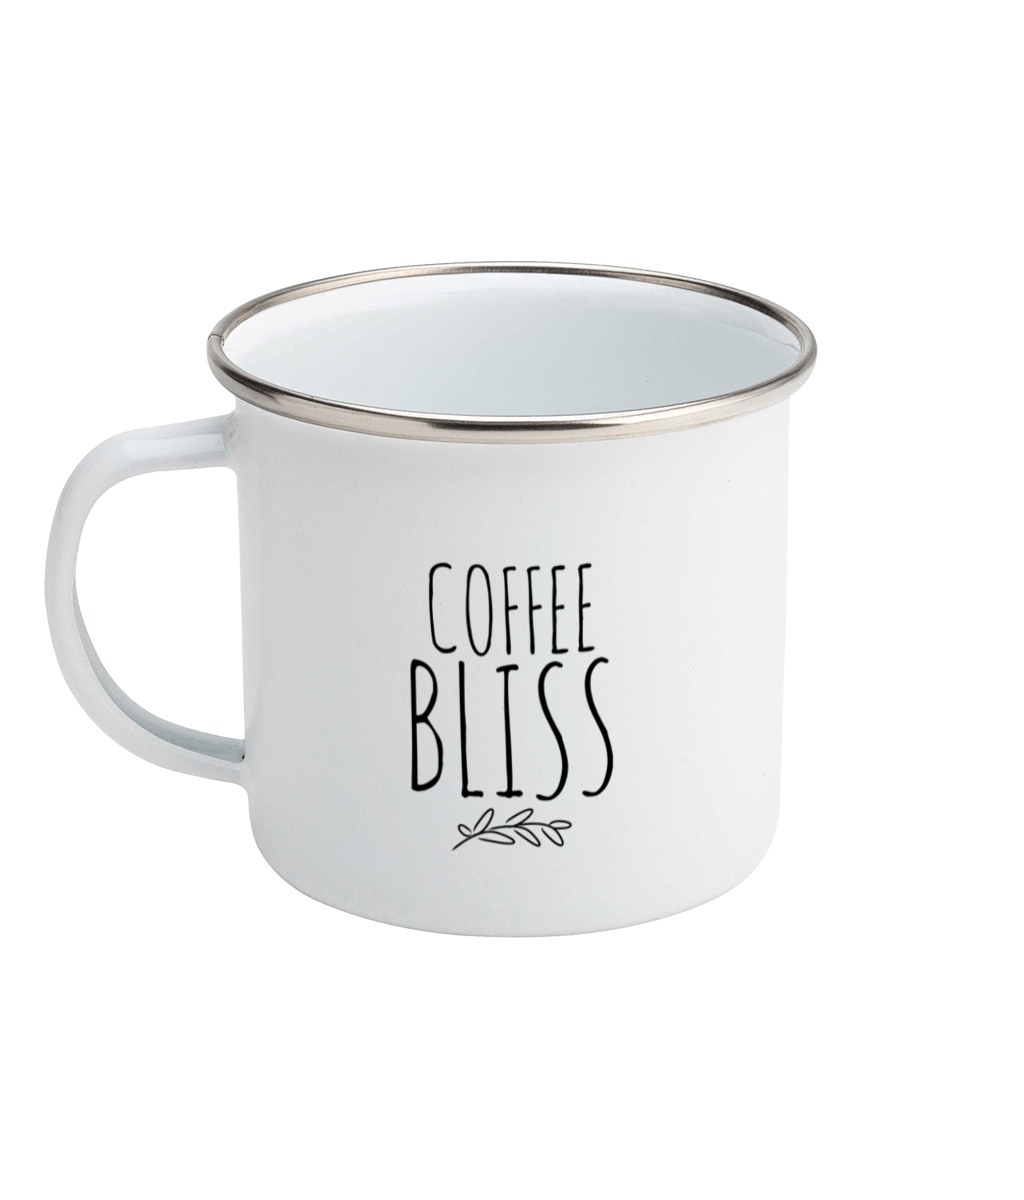 Coffee Bliss Original Mug Enamel